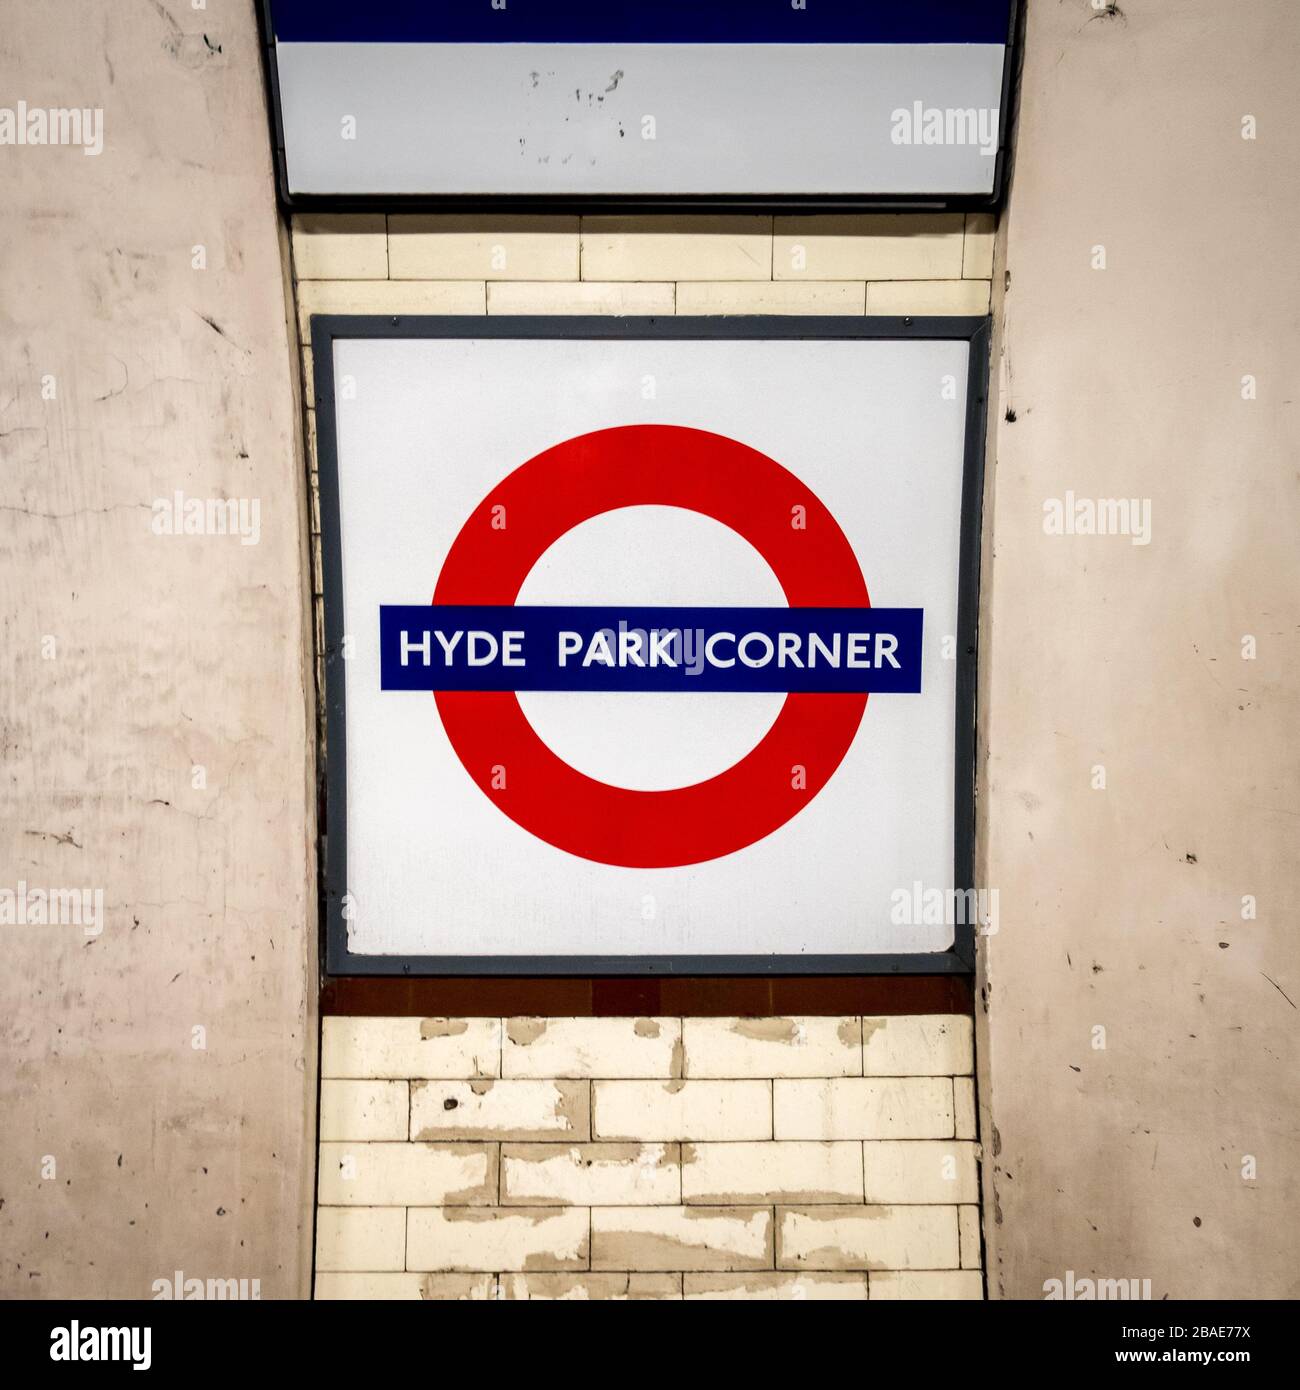 Station de métro Hyde Park Corner. Panneau rond de métro londonien pour la gare sur la ligne Piccadilly desservant les quartiers Mayfair et Park Lane. Banque D'Images